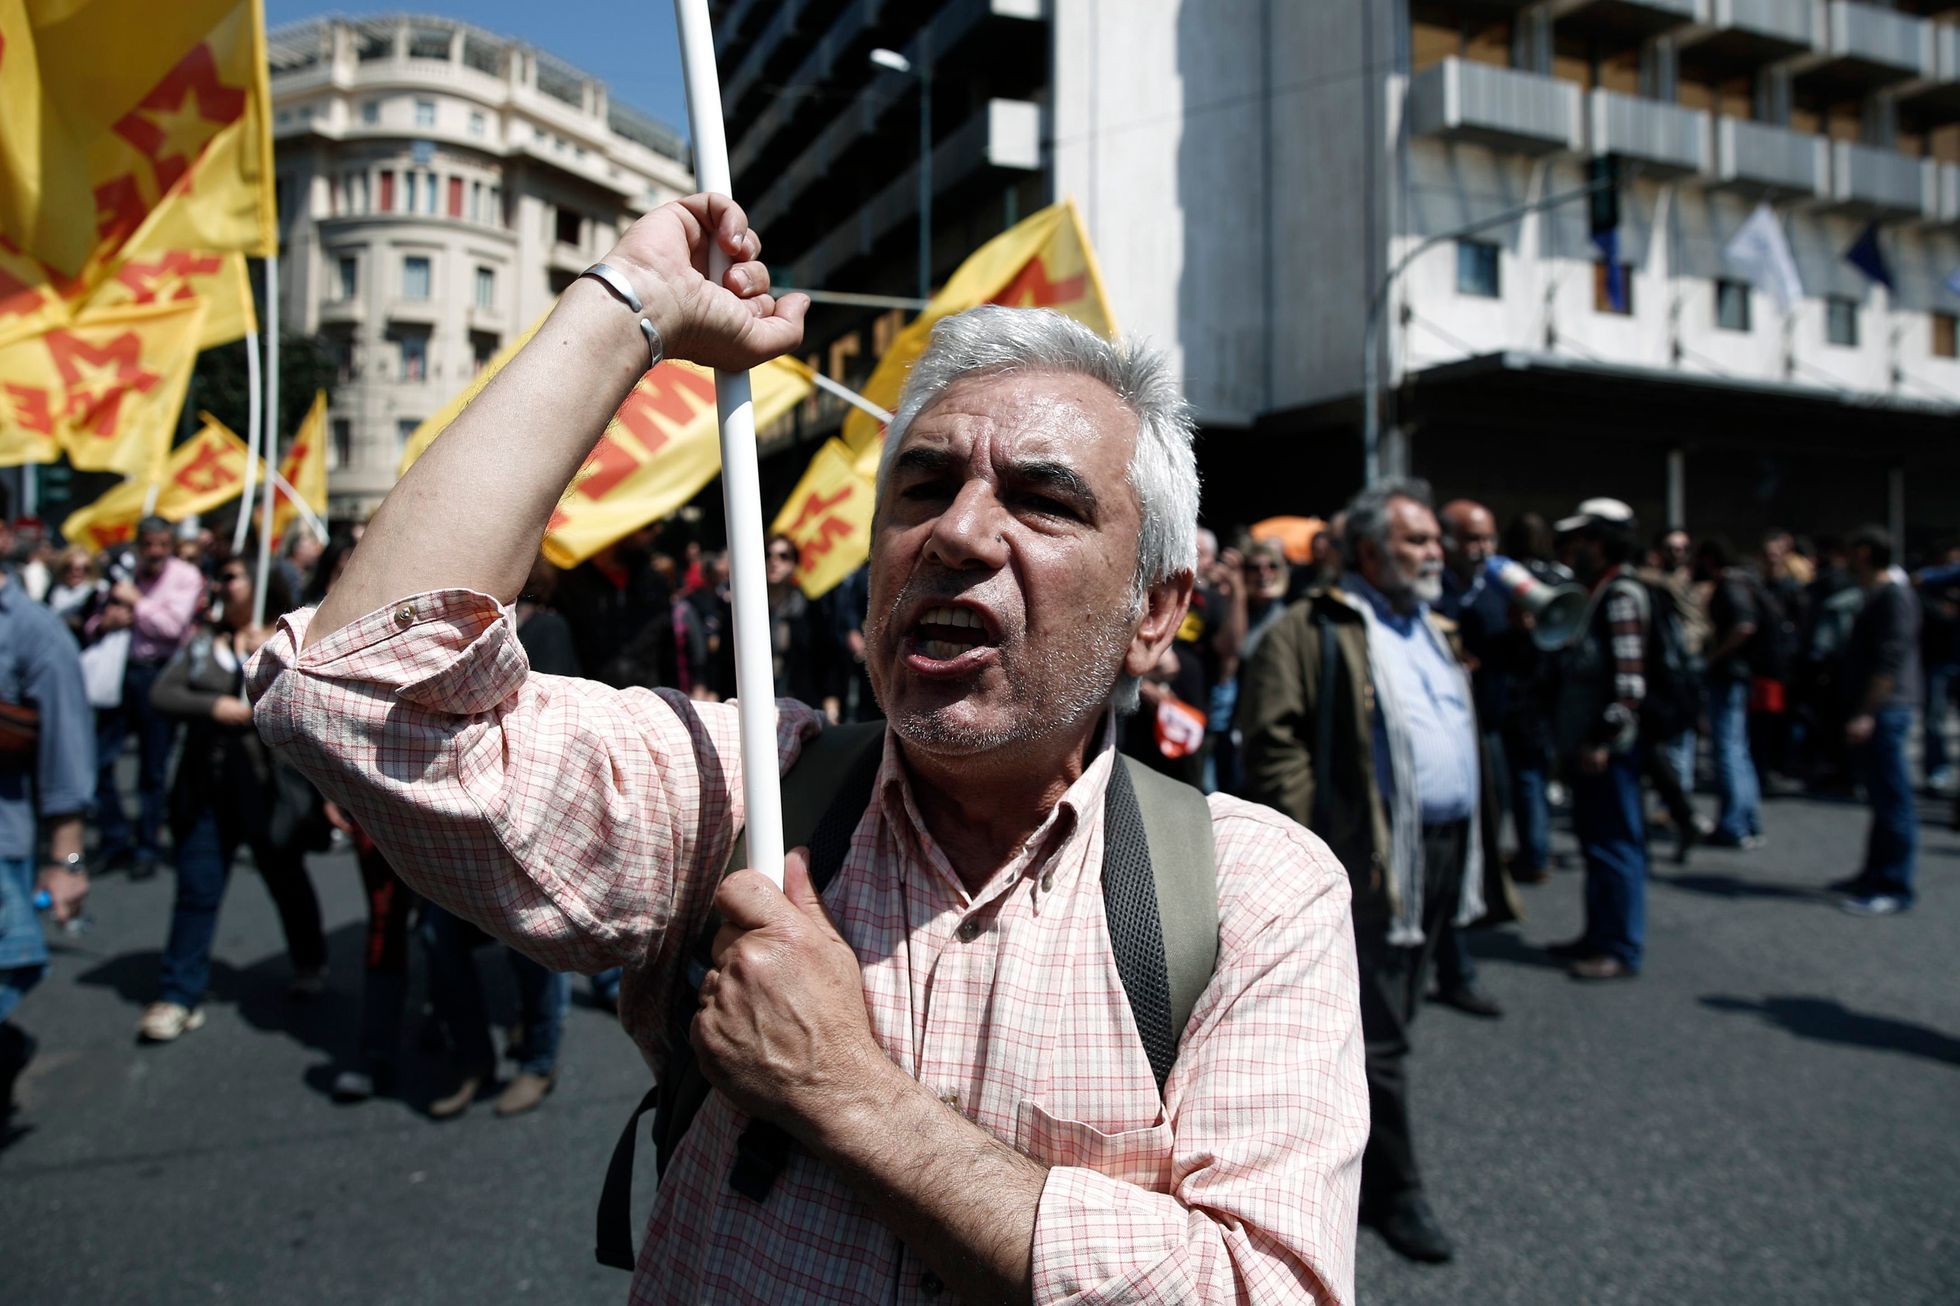 Generální stávka v Řecku